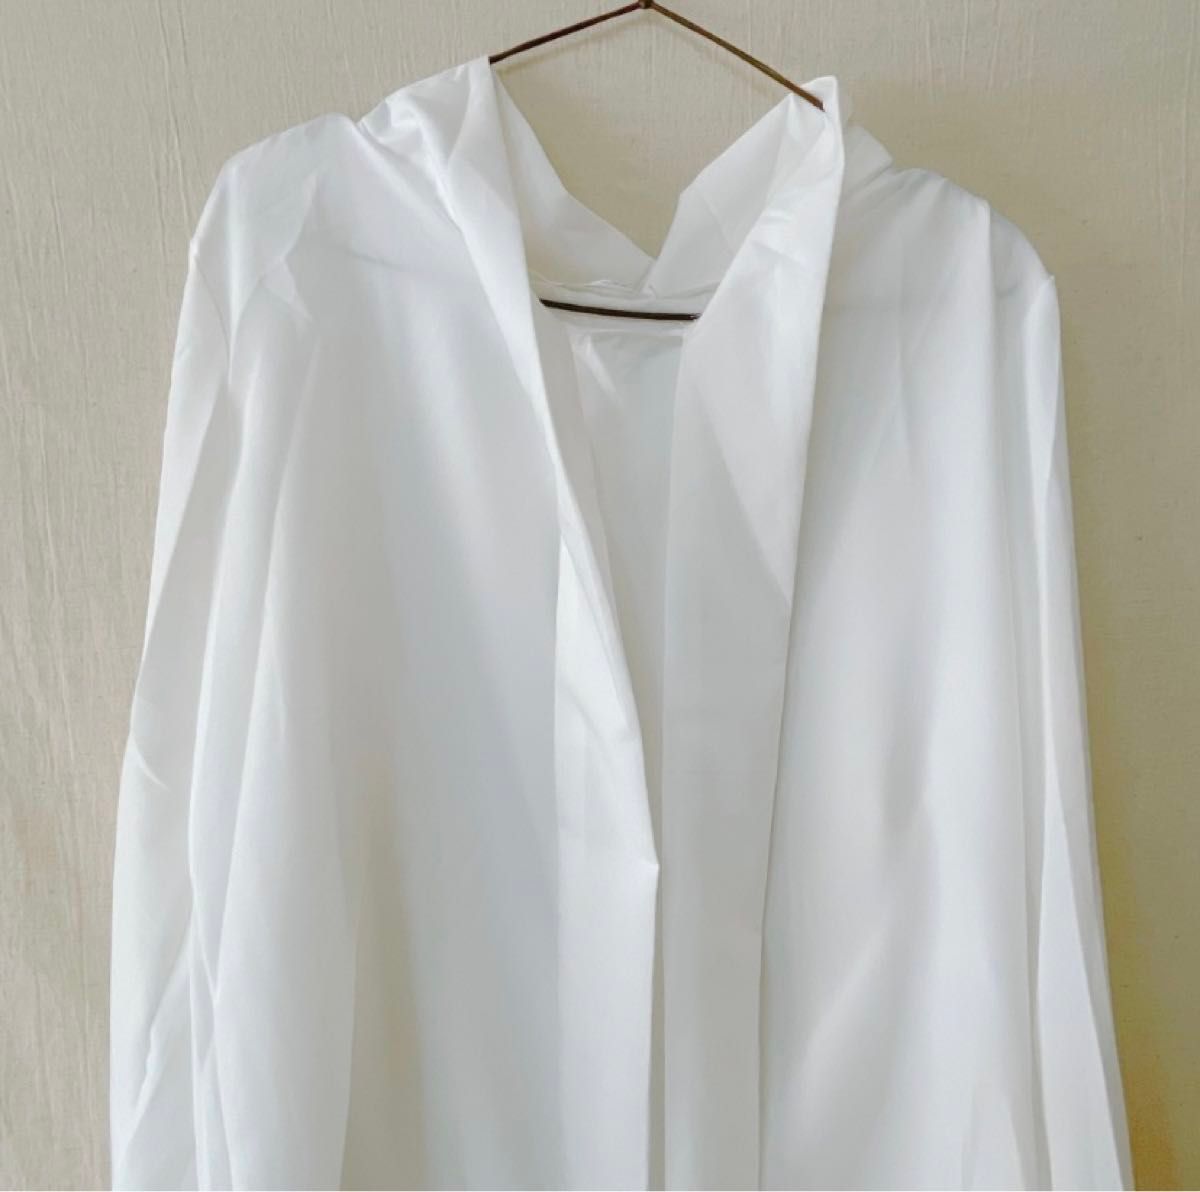 リボンシアーシャツ XLサイズ ホワイト リボン ブラウス シャツ 長袖 ボウダイブラウス シフォン 透け感 オフィス